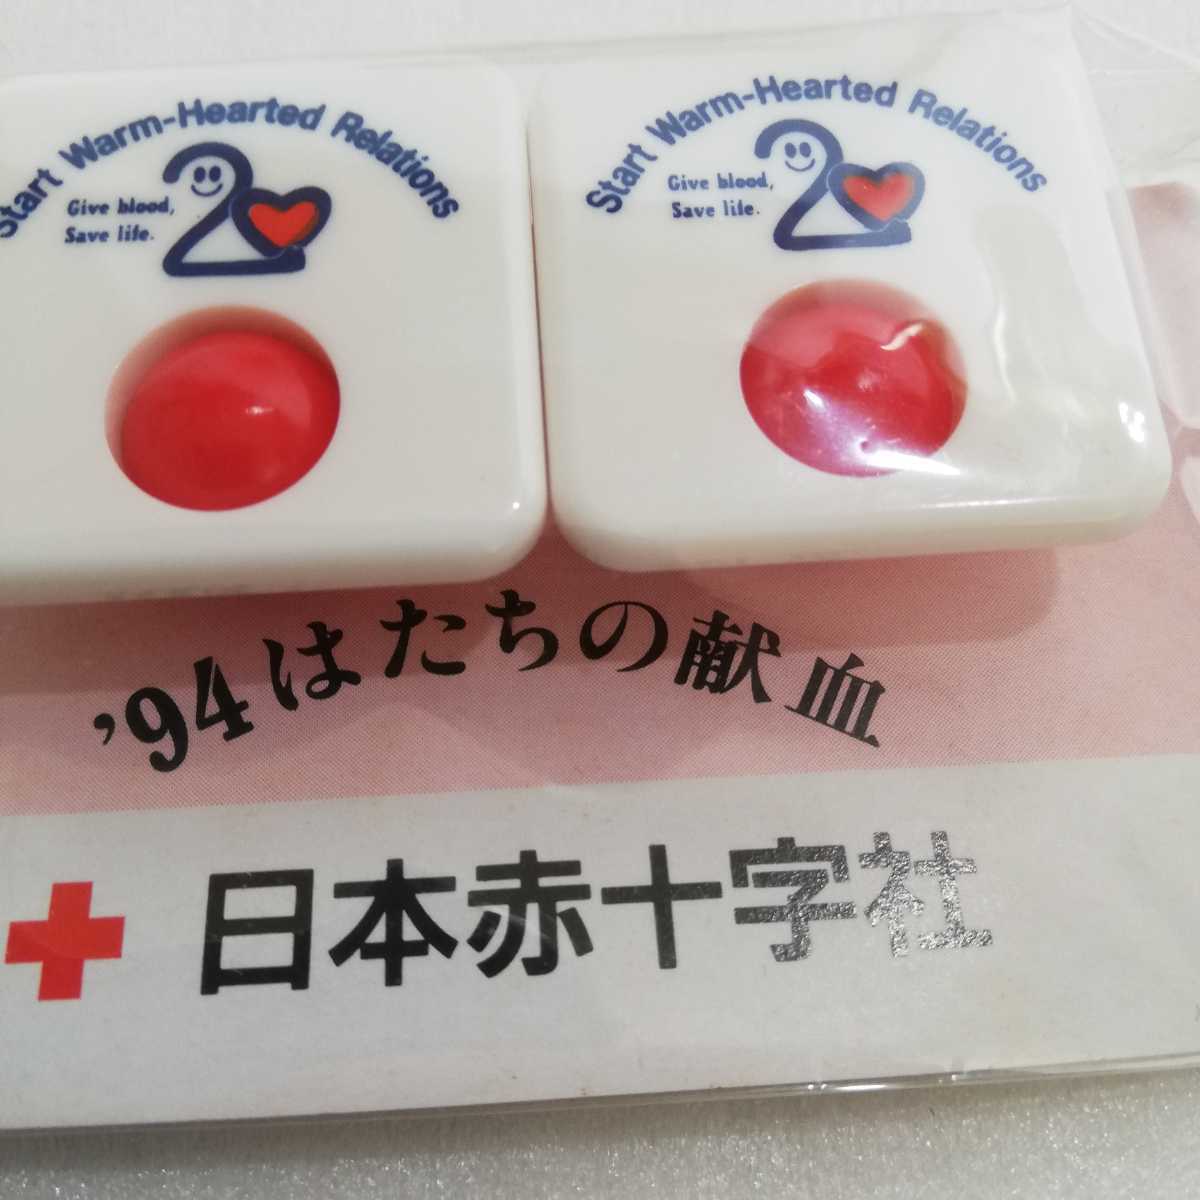 日本赤十字社 ’94 はたちの献血 マグネット式メモクリップ 2個セット 非売品 [赤十字 グッズ]_画像2